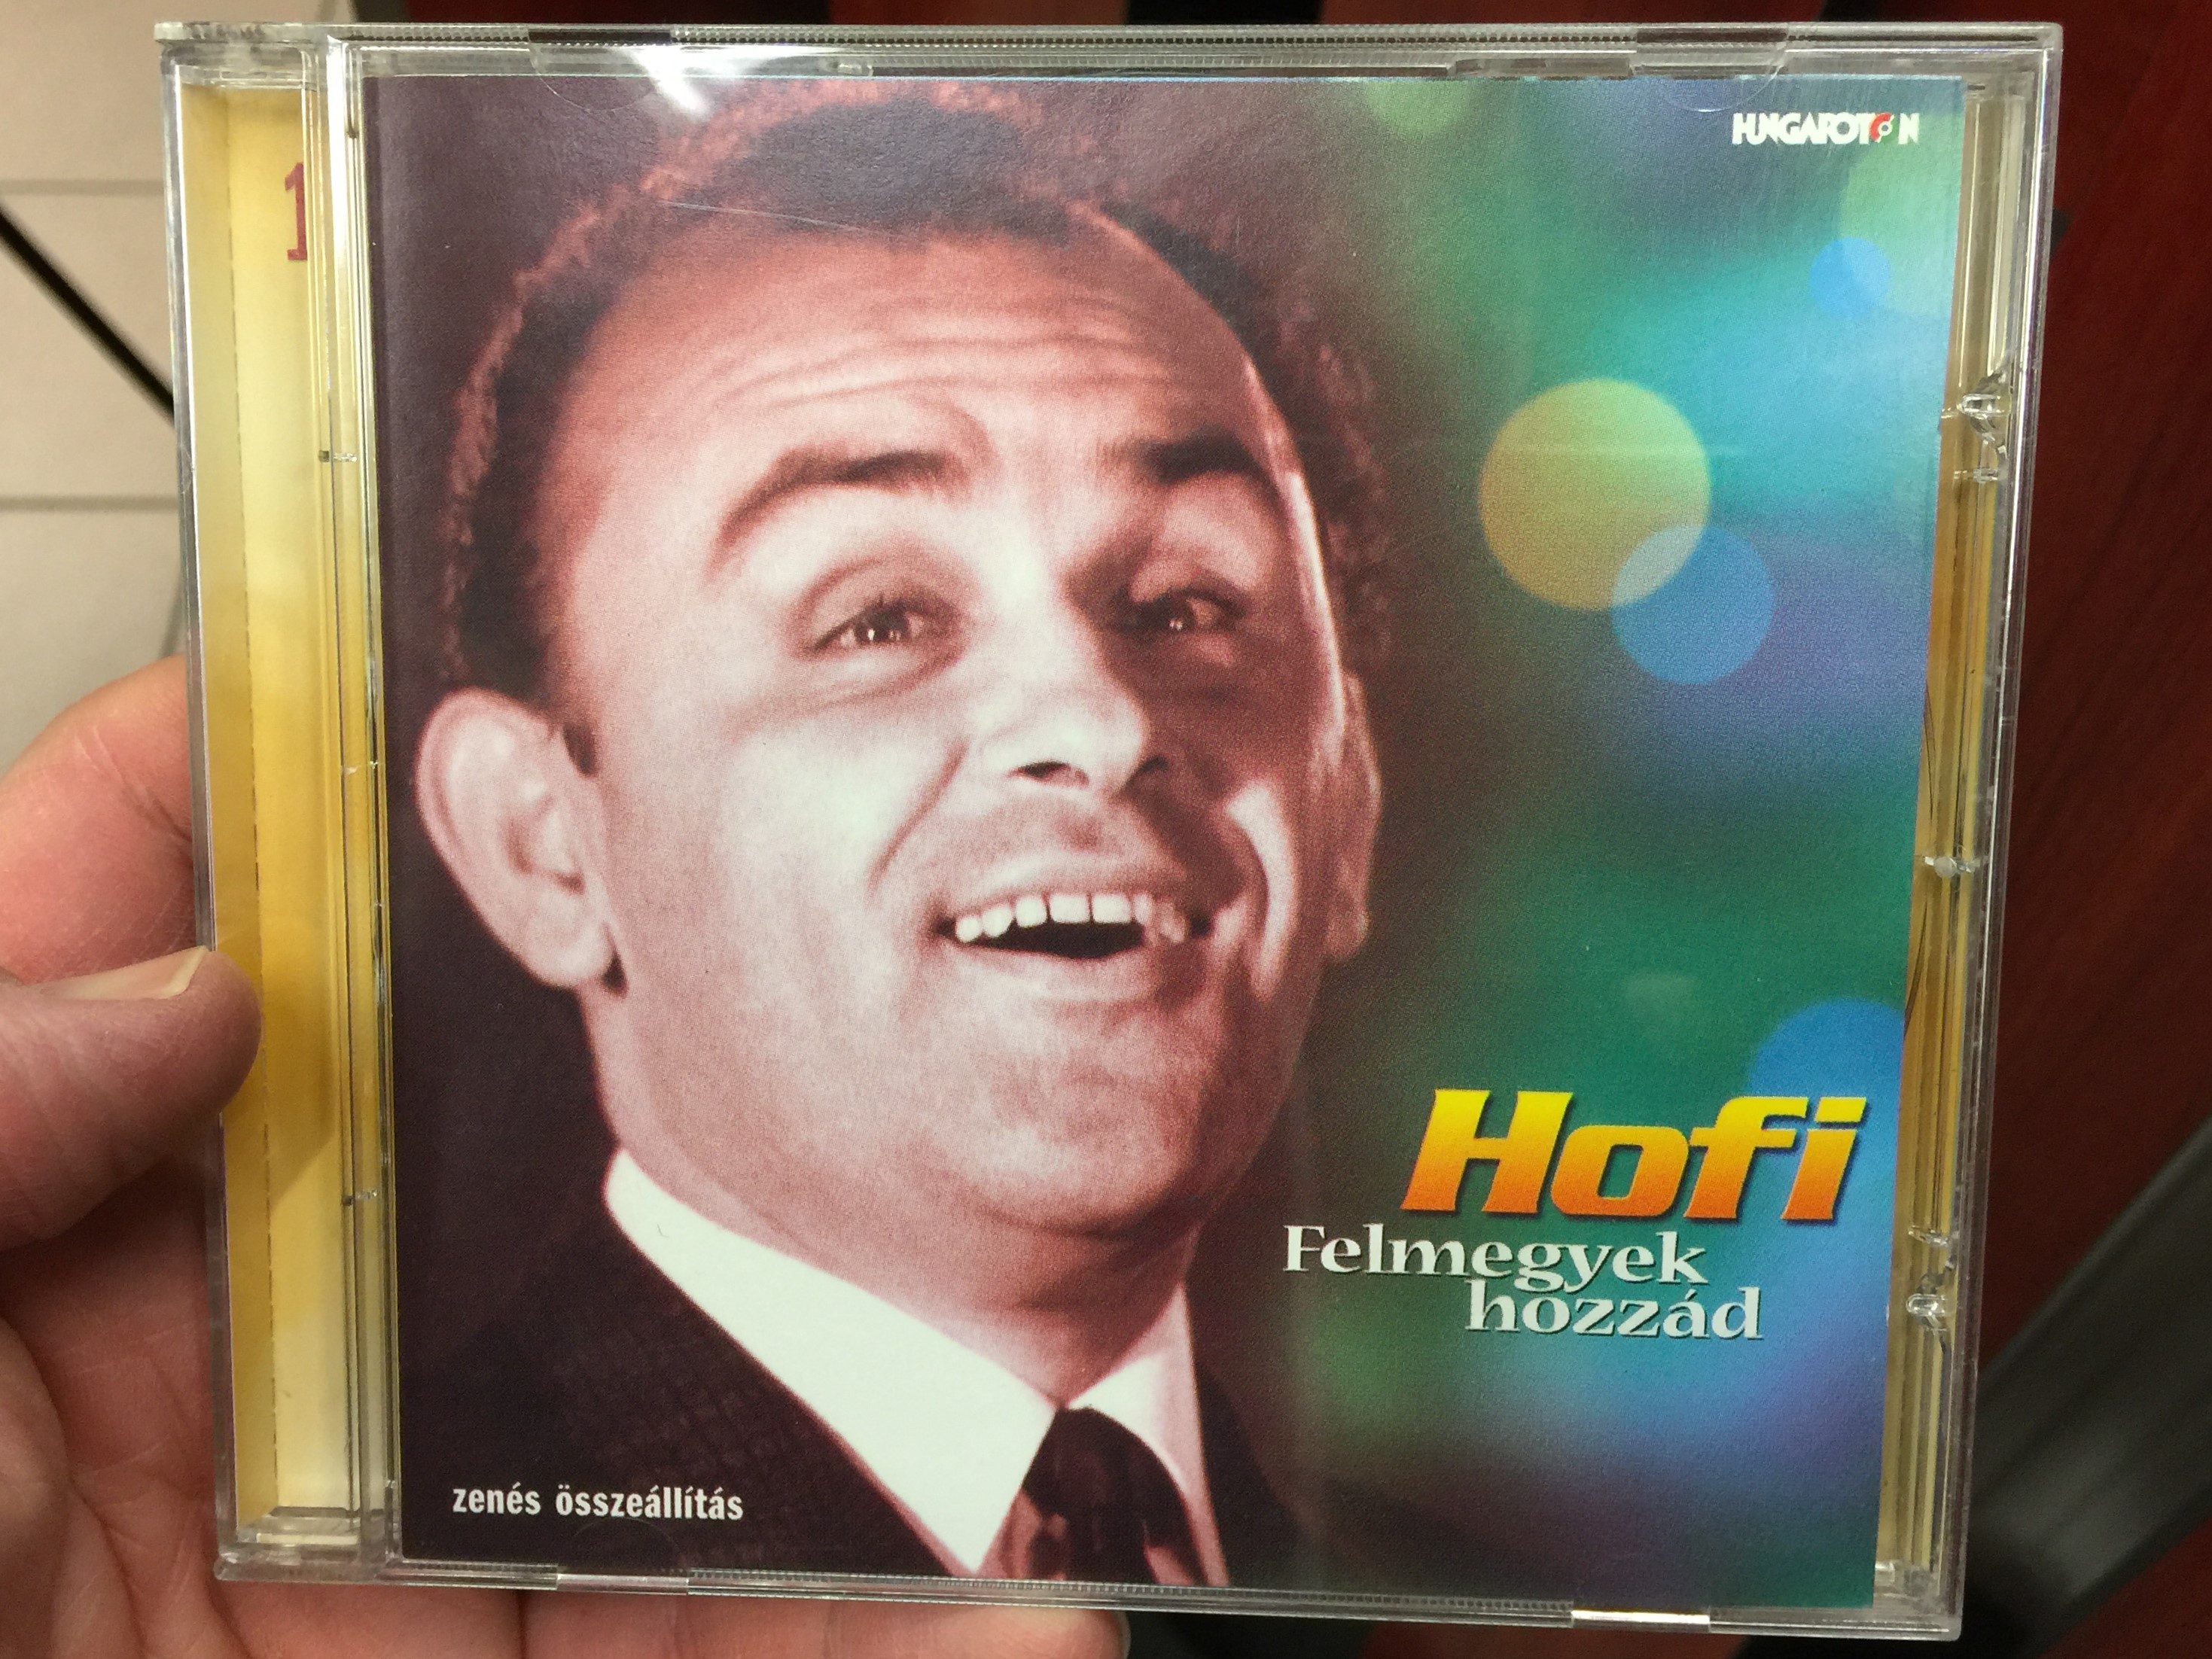 hofi-felmegyek-hozz-d-hungaroton-audio-cd-2004-hcd-71187-1-.jpg